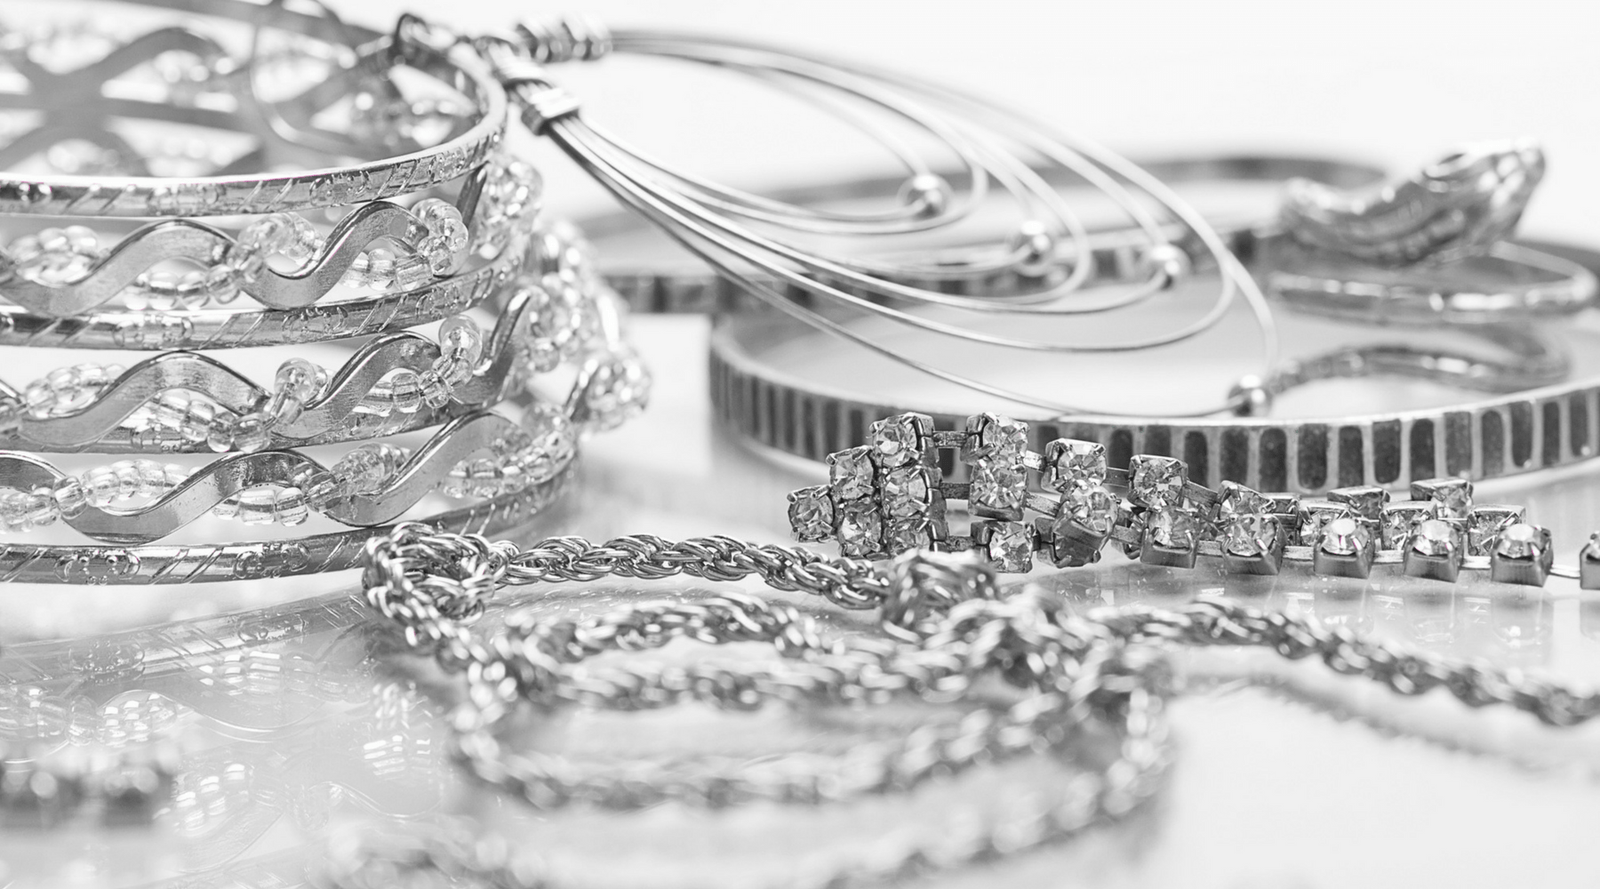 Unique Sterling Silver Necklaces & Pendants